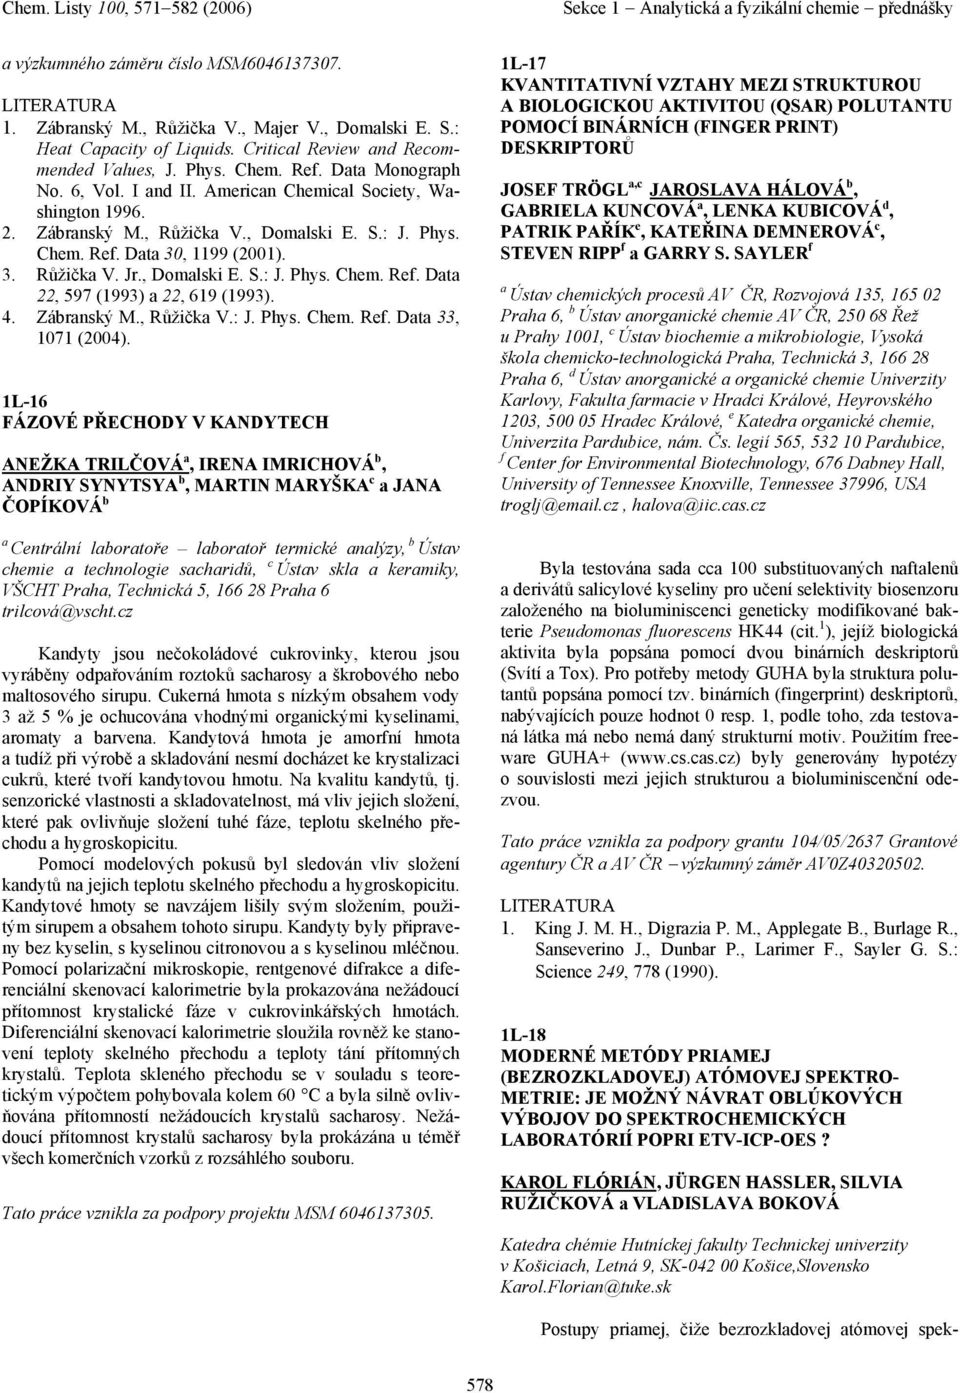 4. Zábranský M., Růžička V.: J. Phys. Chem. Ref. Data 33, 1071 (2004).